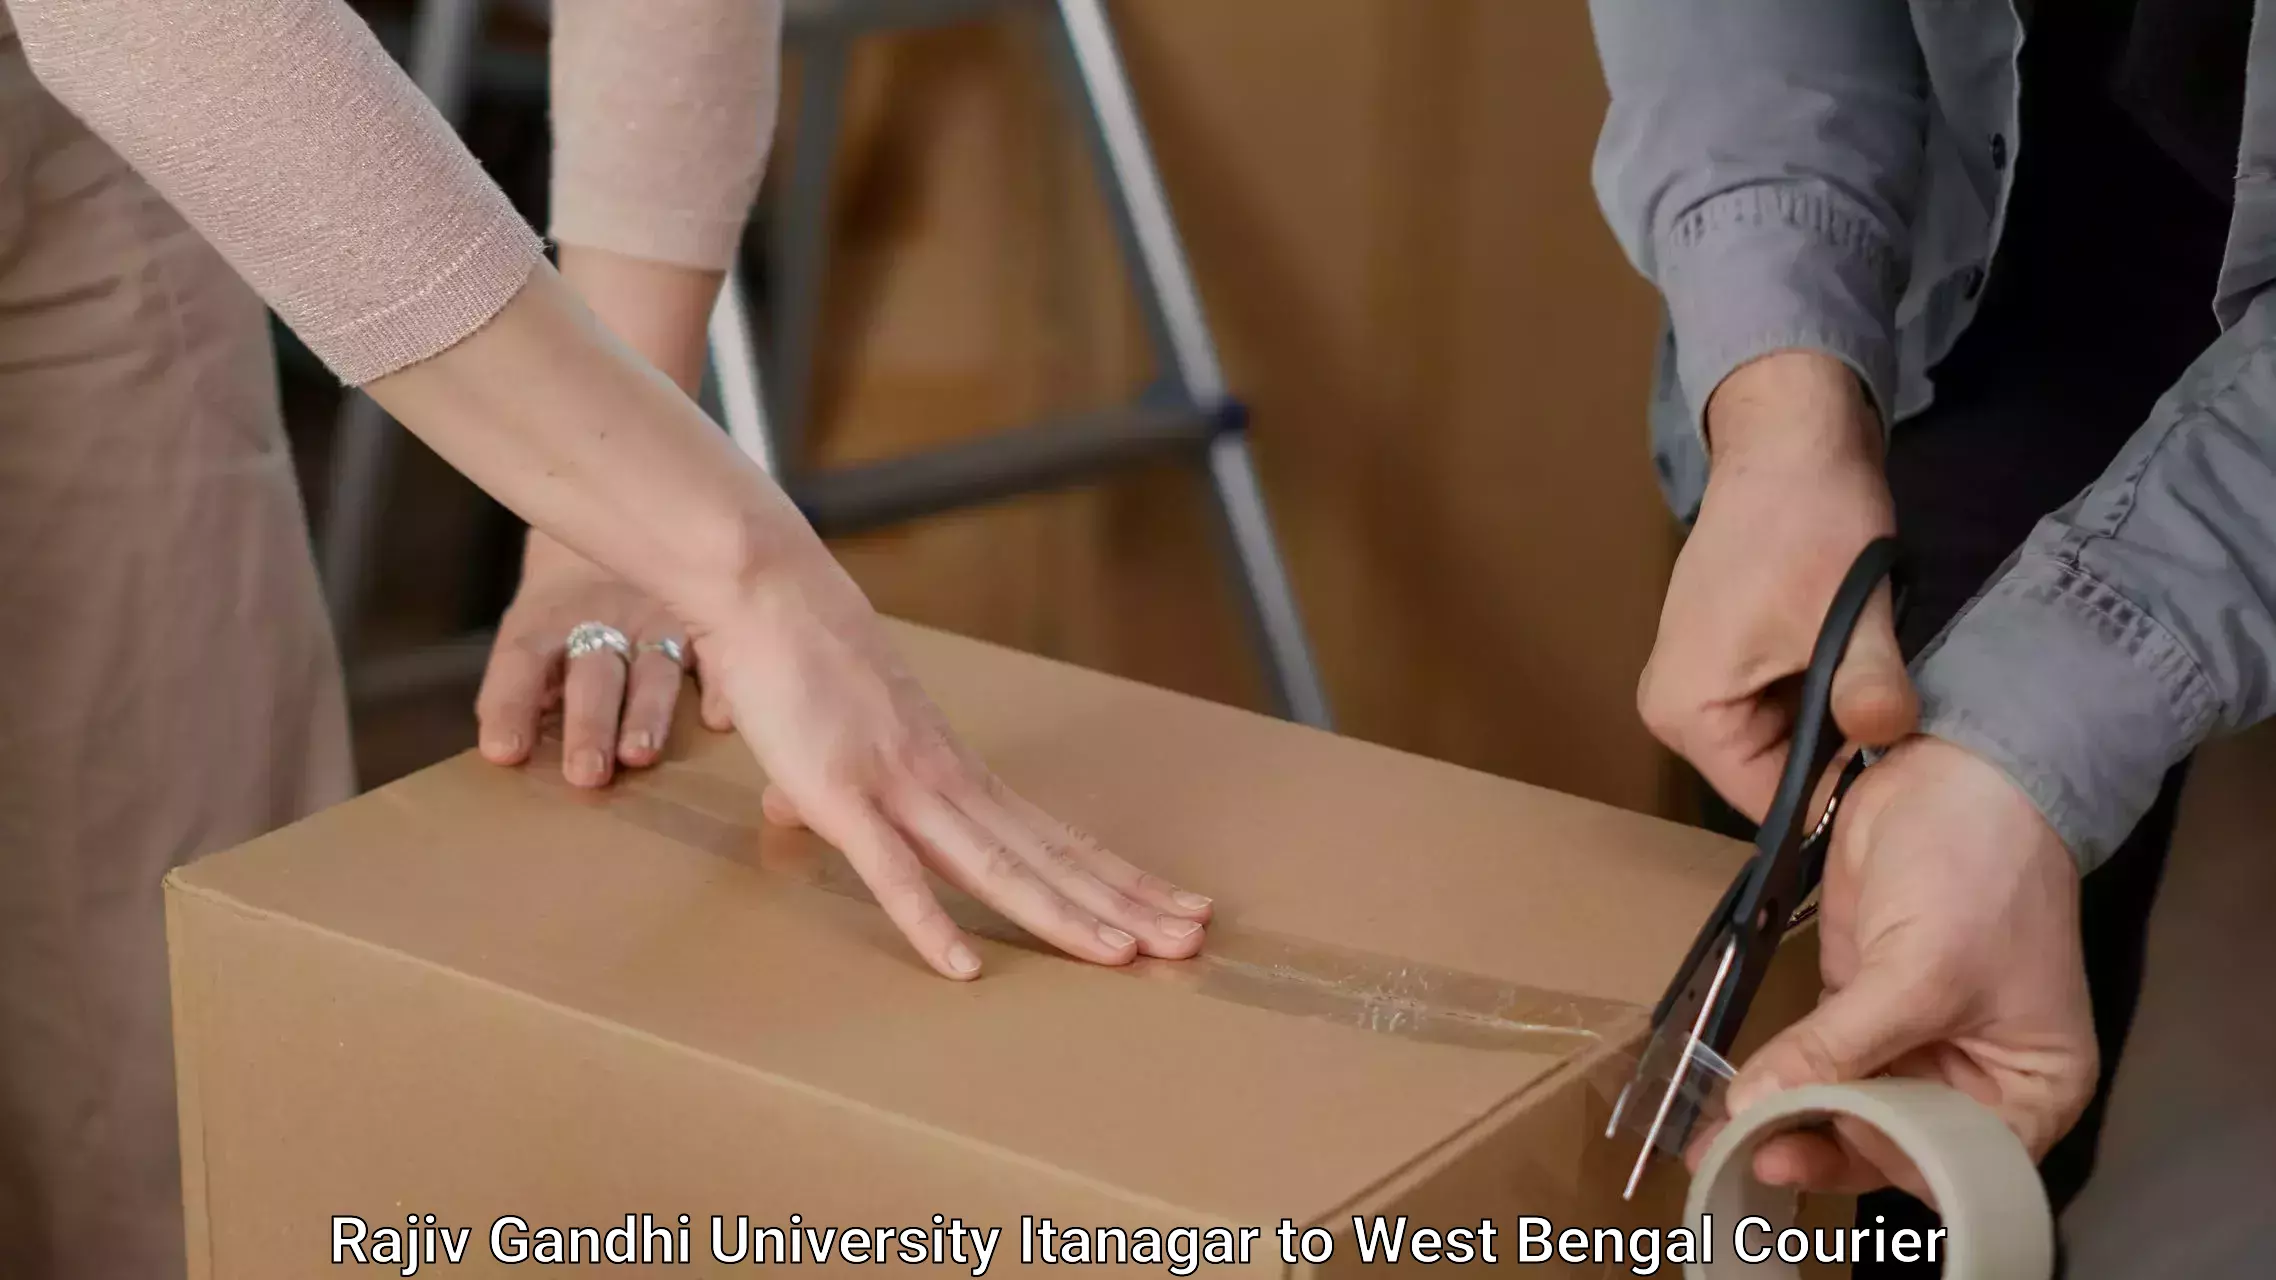 Furniture moving assistance in Rajiv Gandhi University Itanagar to Ennore